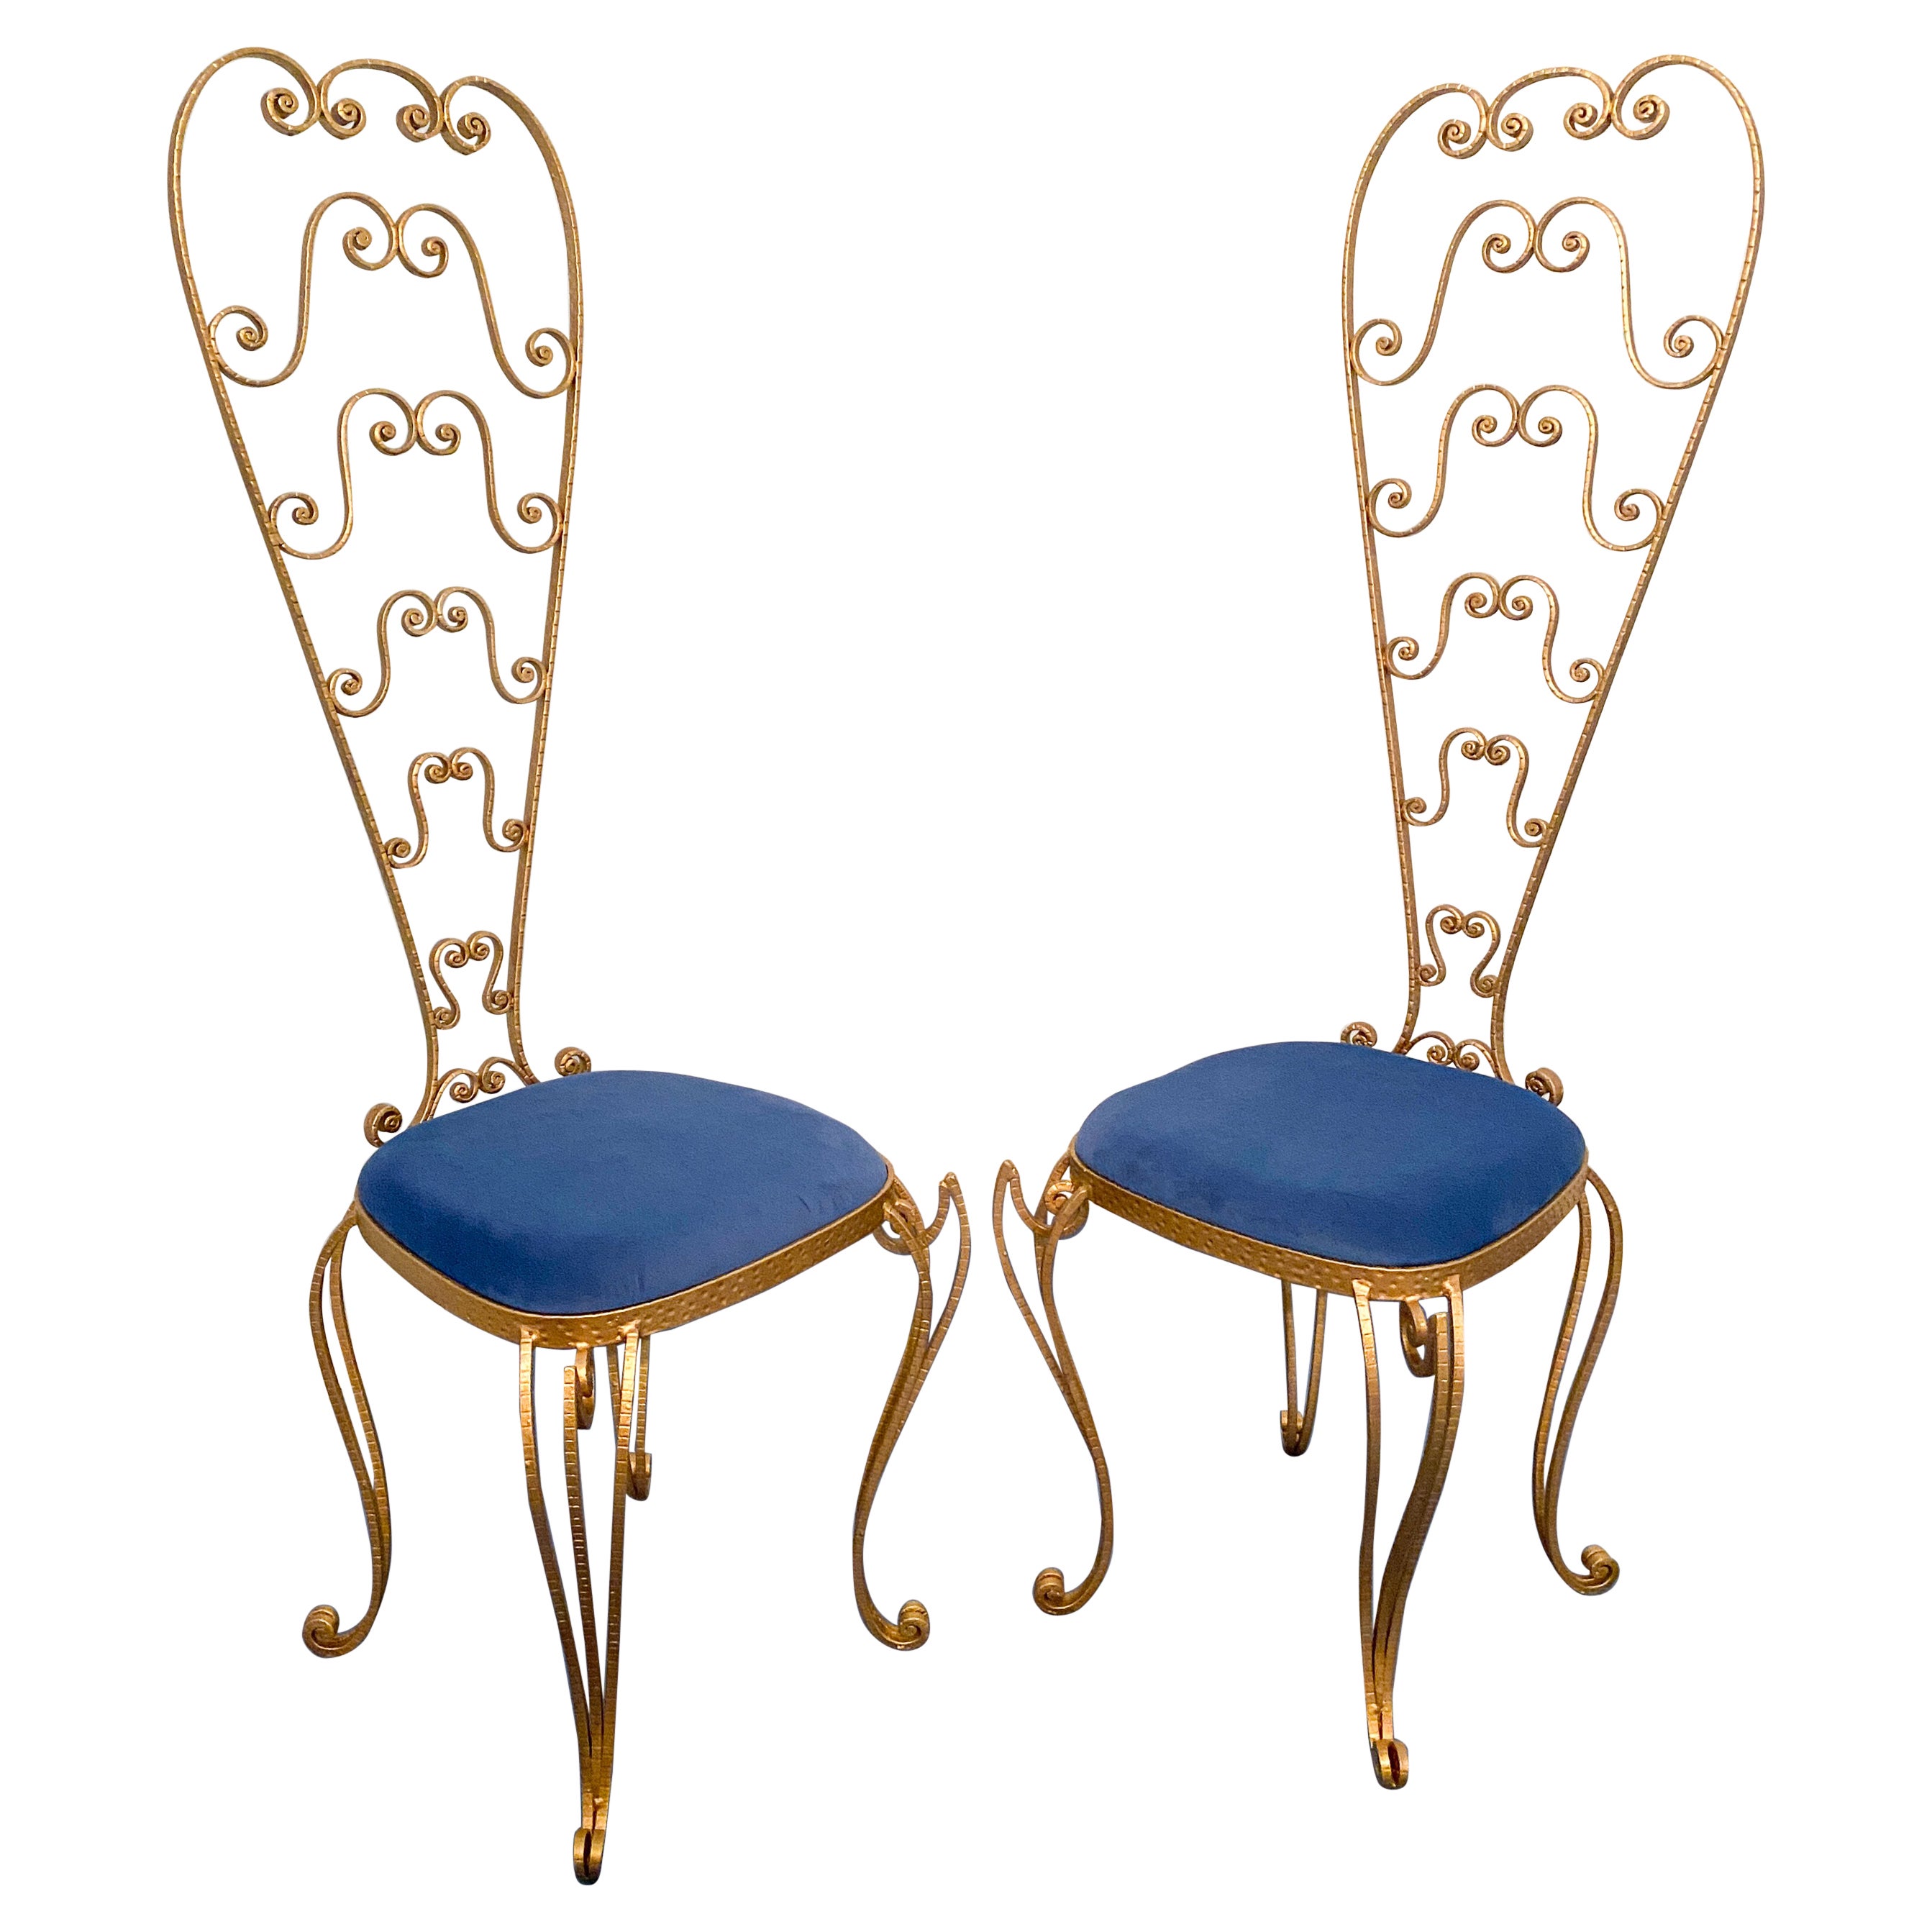 Pair of Italian Mid-Century Modern Luigi Colli Gold Iron Vanity Chairs, 1950s